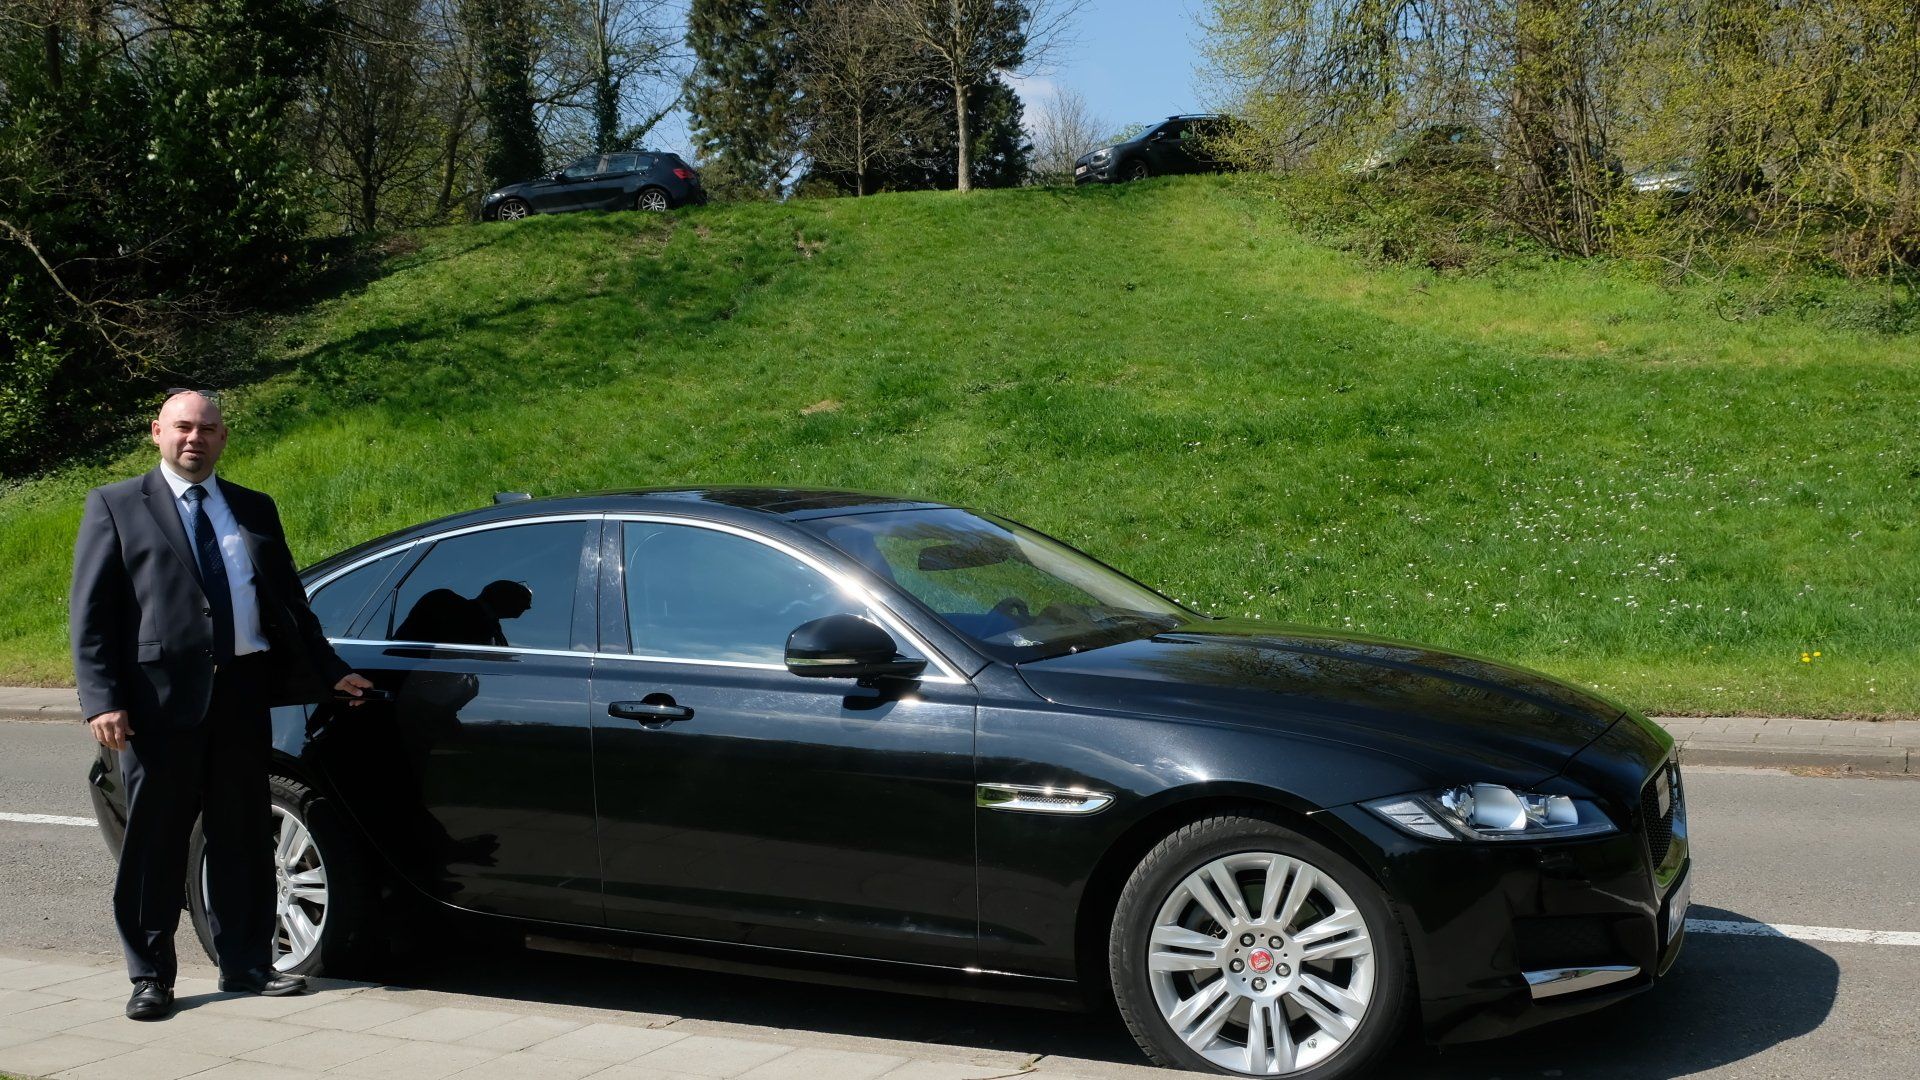 Photo extérieur d'une Jaguar noir